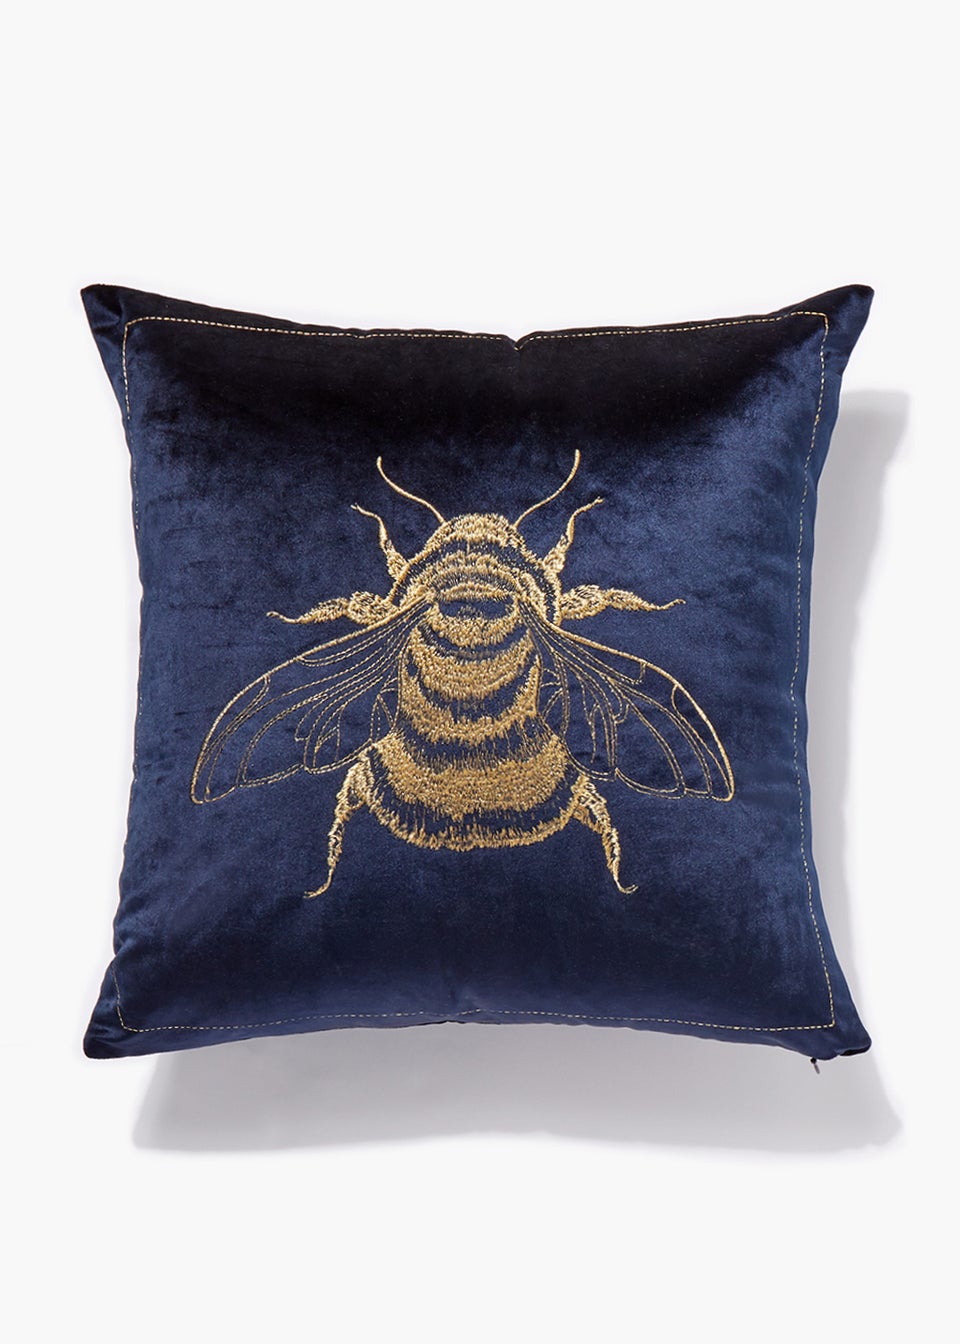 Navy Velvet Bee Embroidered Cushion (46cm x 46cm)